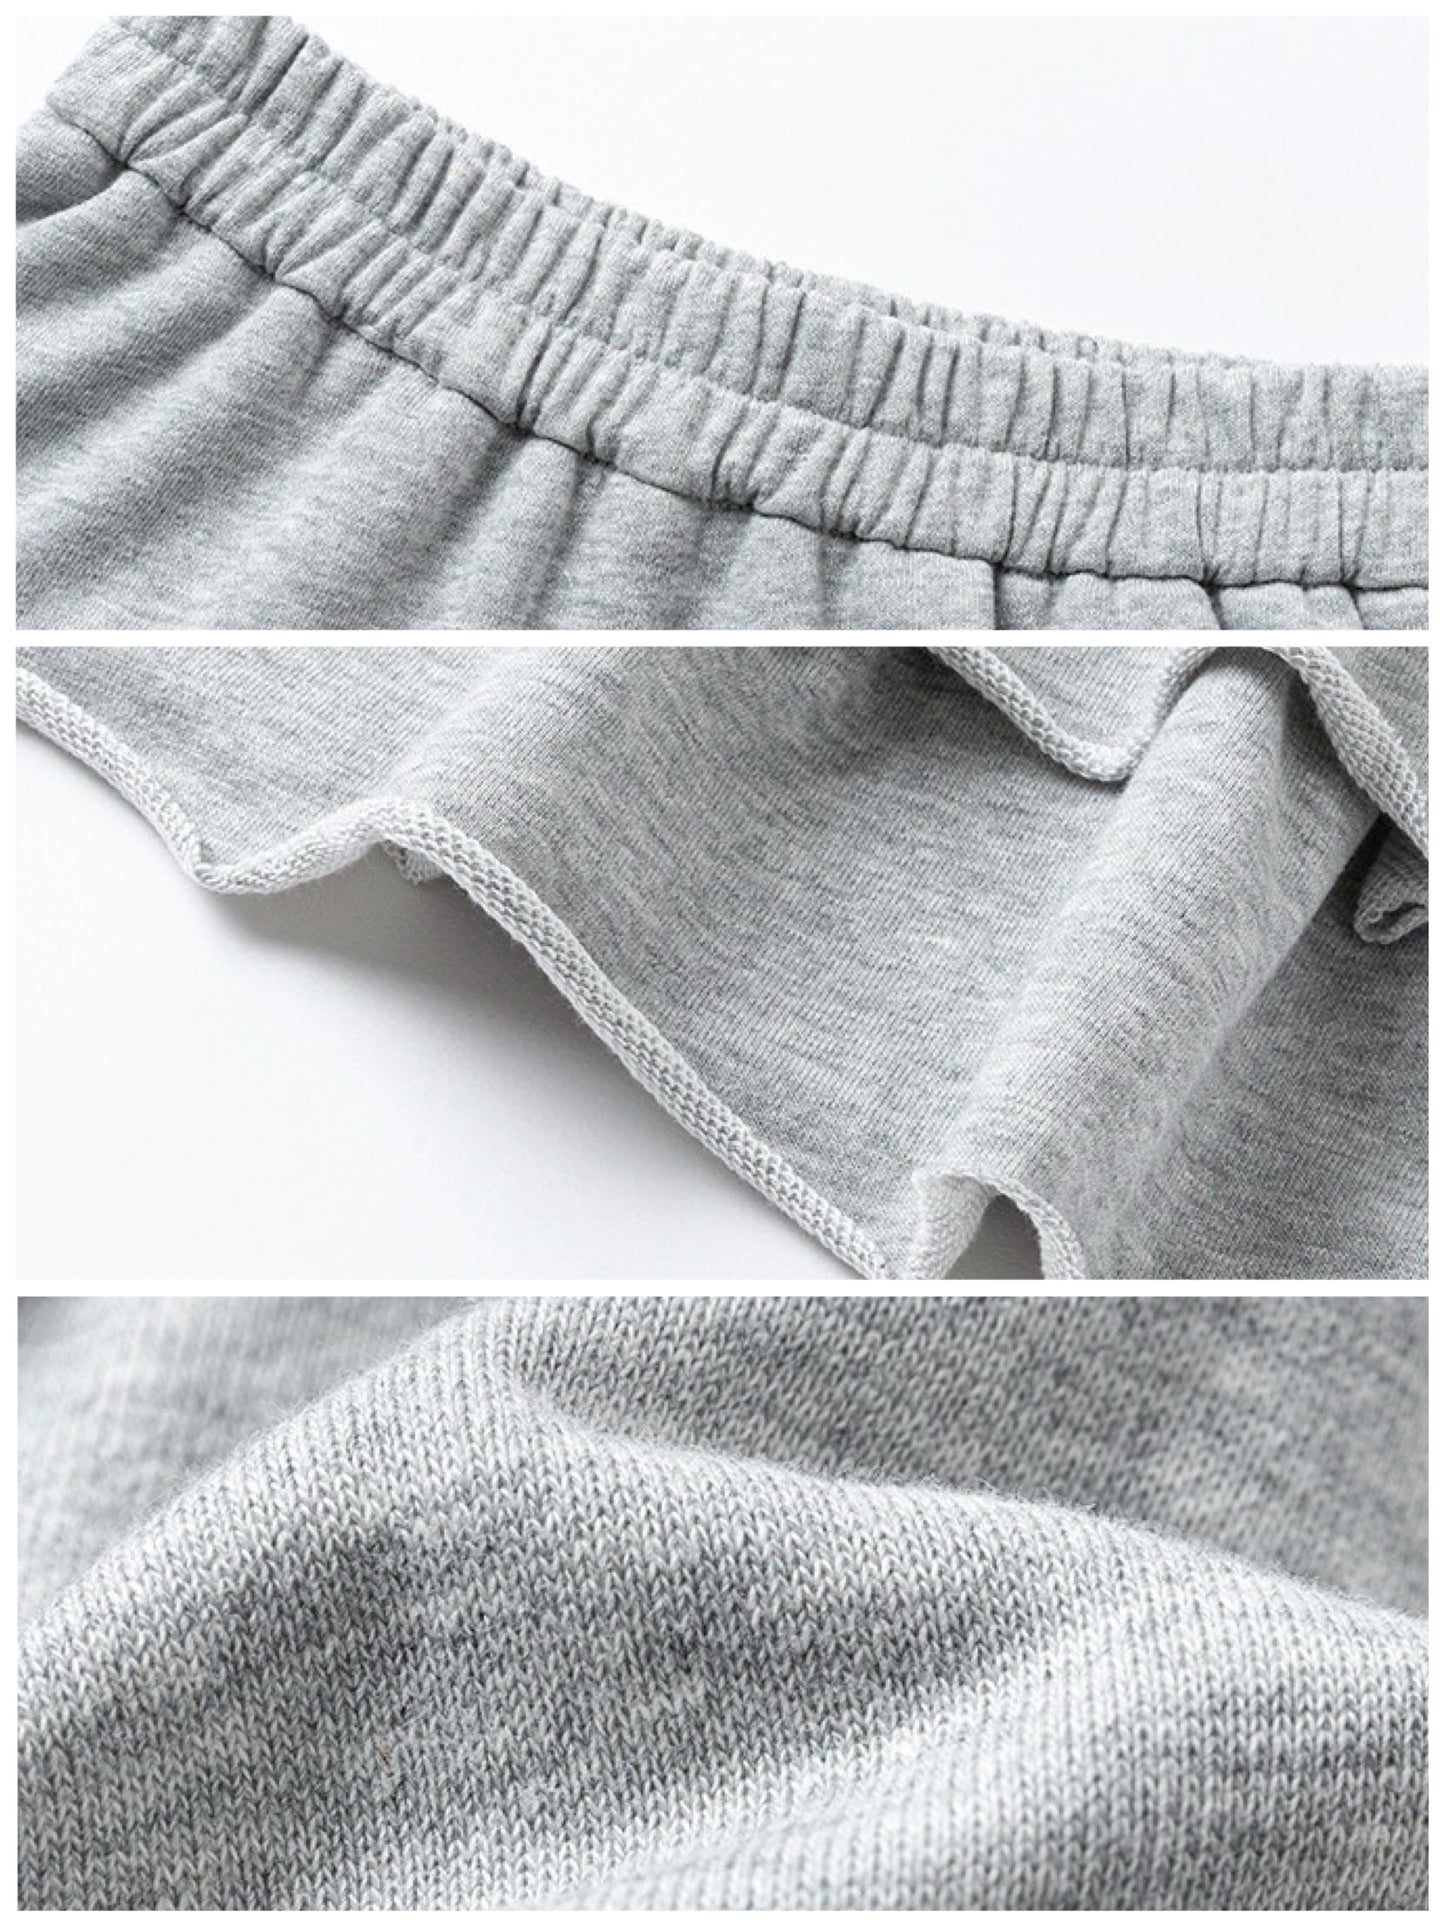 [90-160cm] Fleece sweat tiered skirt